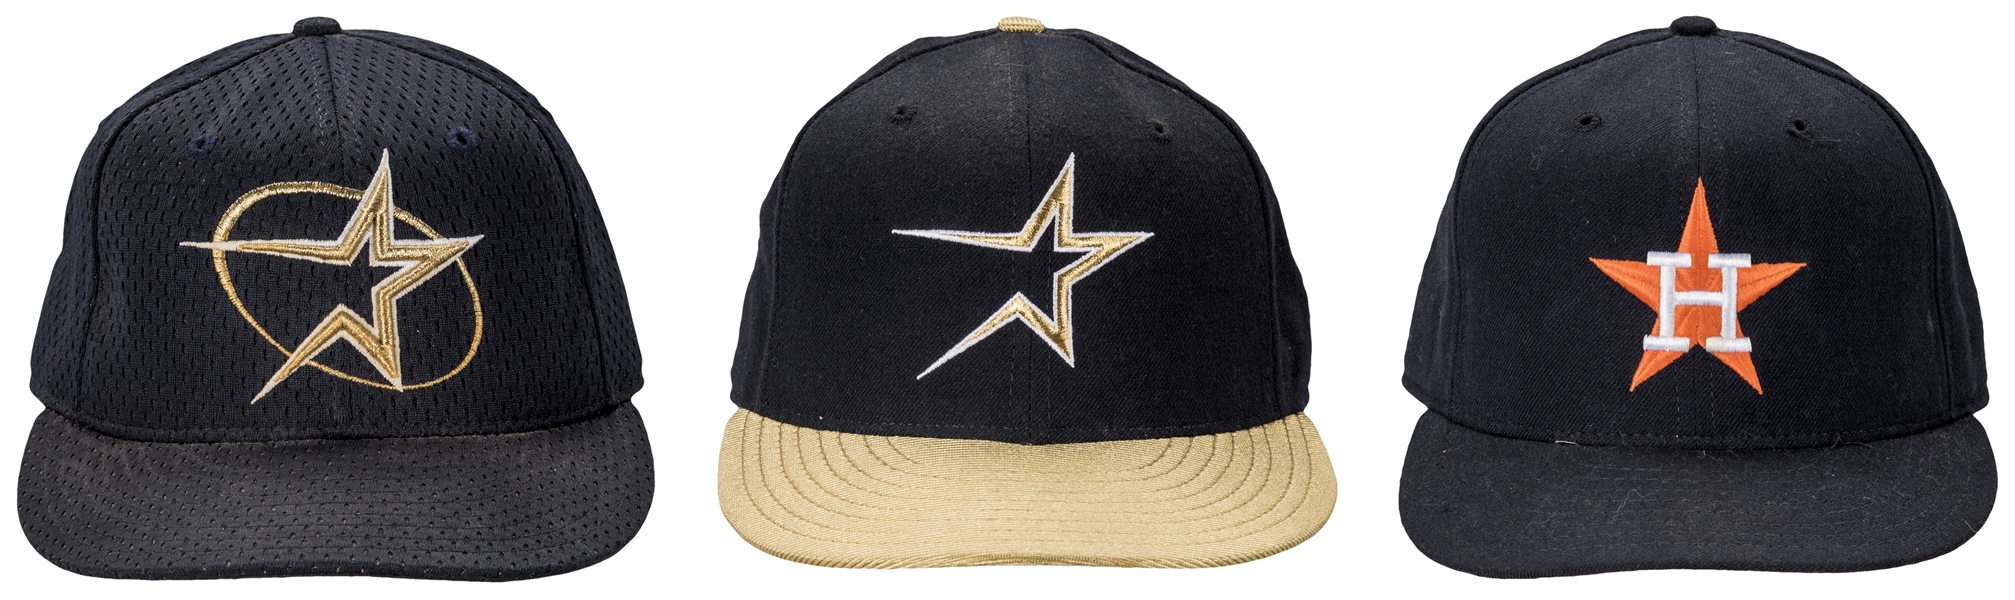 Lot Detail - Lot of (3) Craig Biggio Game Used Houston Astros Caps